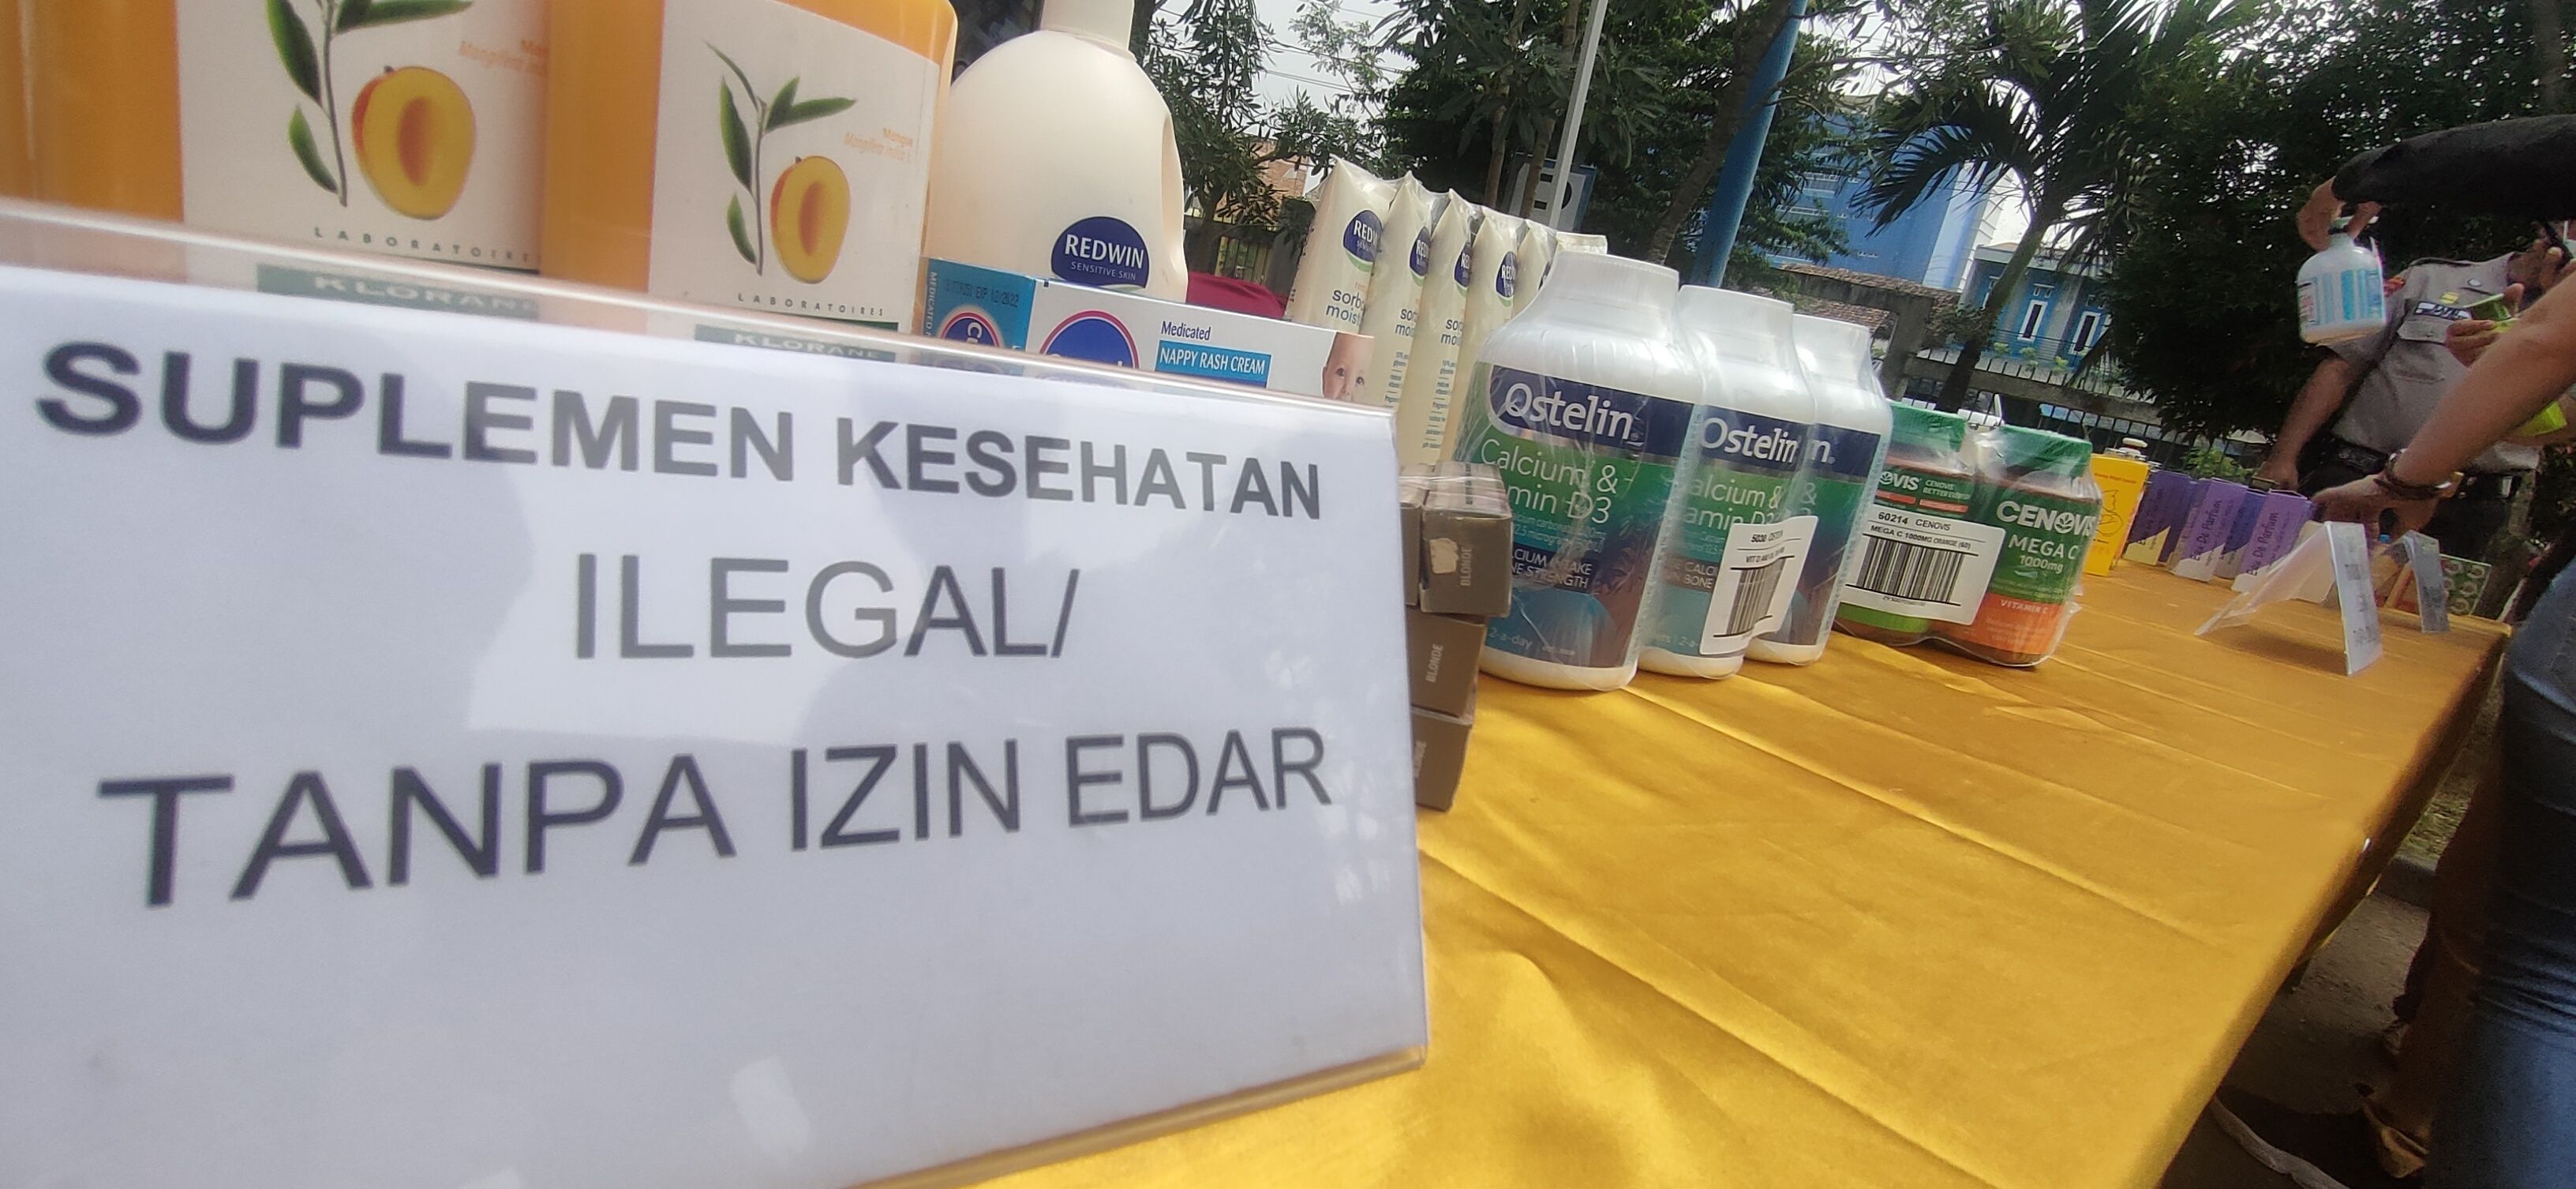 Pasar Obat dan Kosmetik Ilegal Dibongkar BPPOM Serang, Produk Senilai Rp 3,7 M Diamankan  